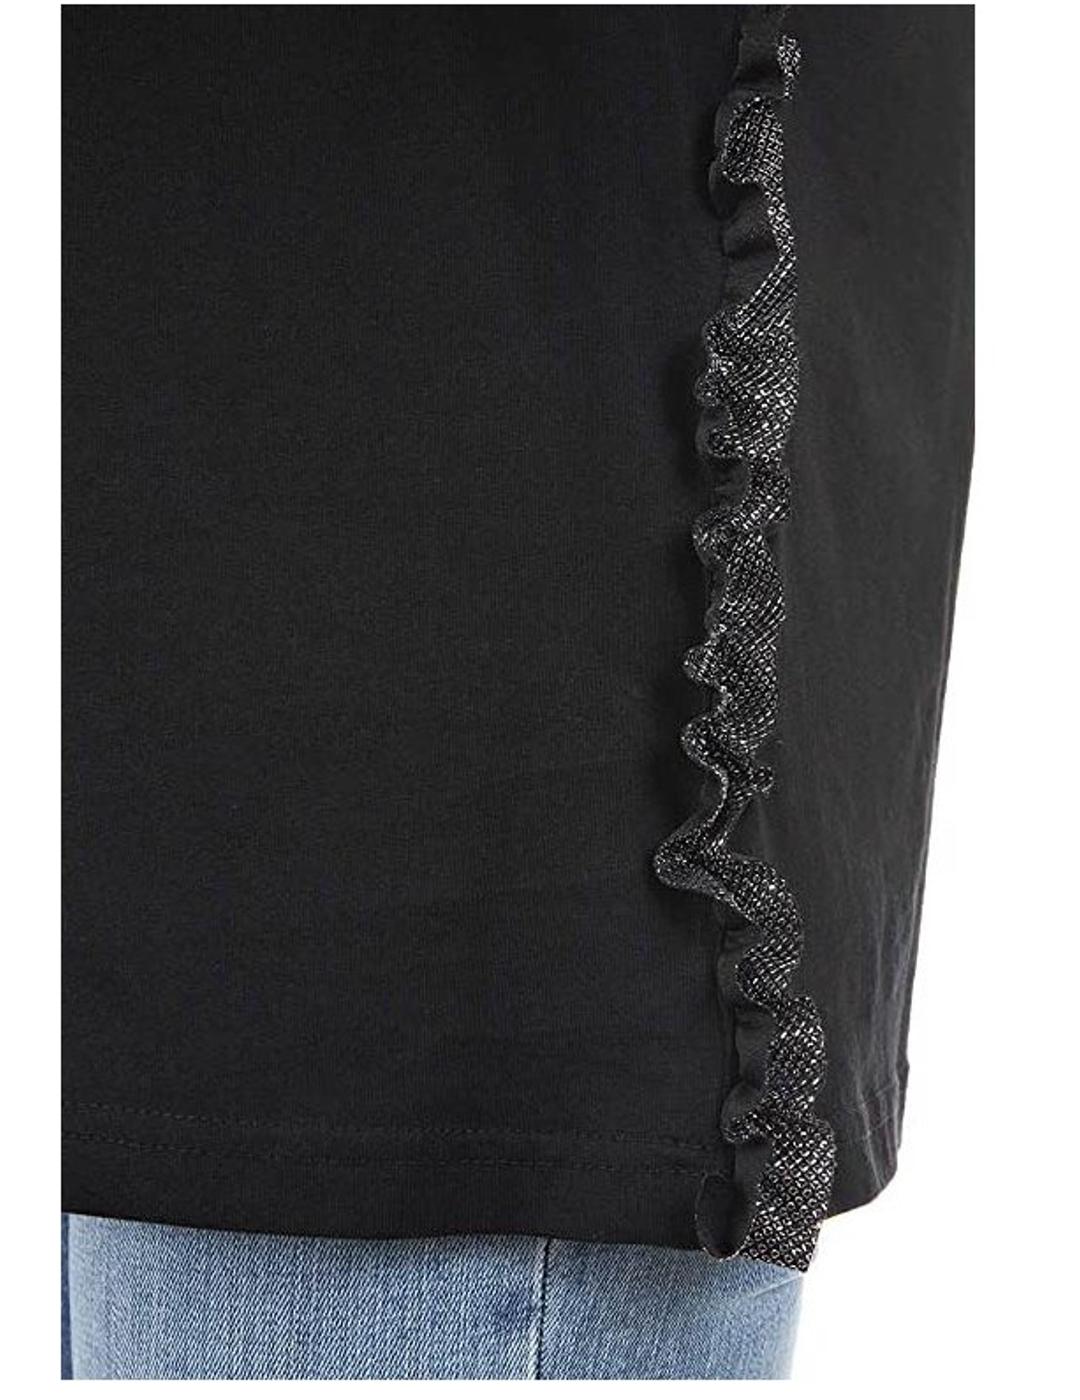 Camiseta Replay negra manga corta mujer